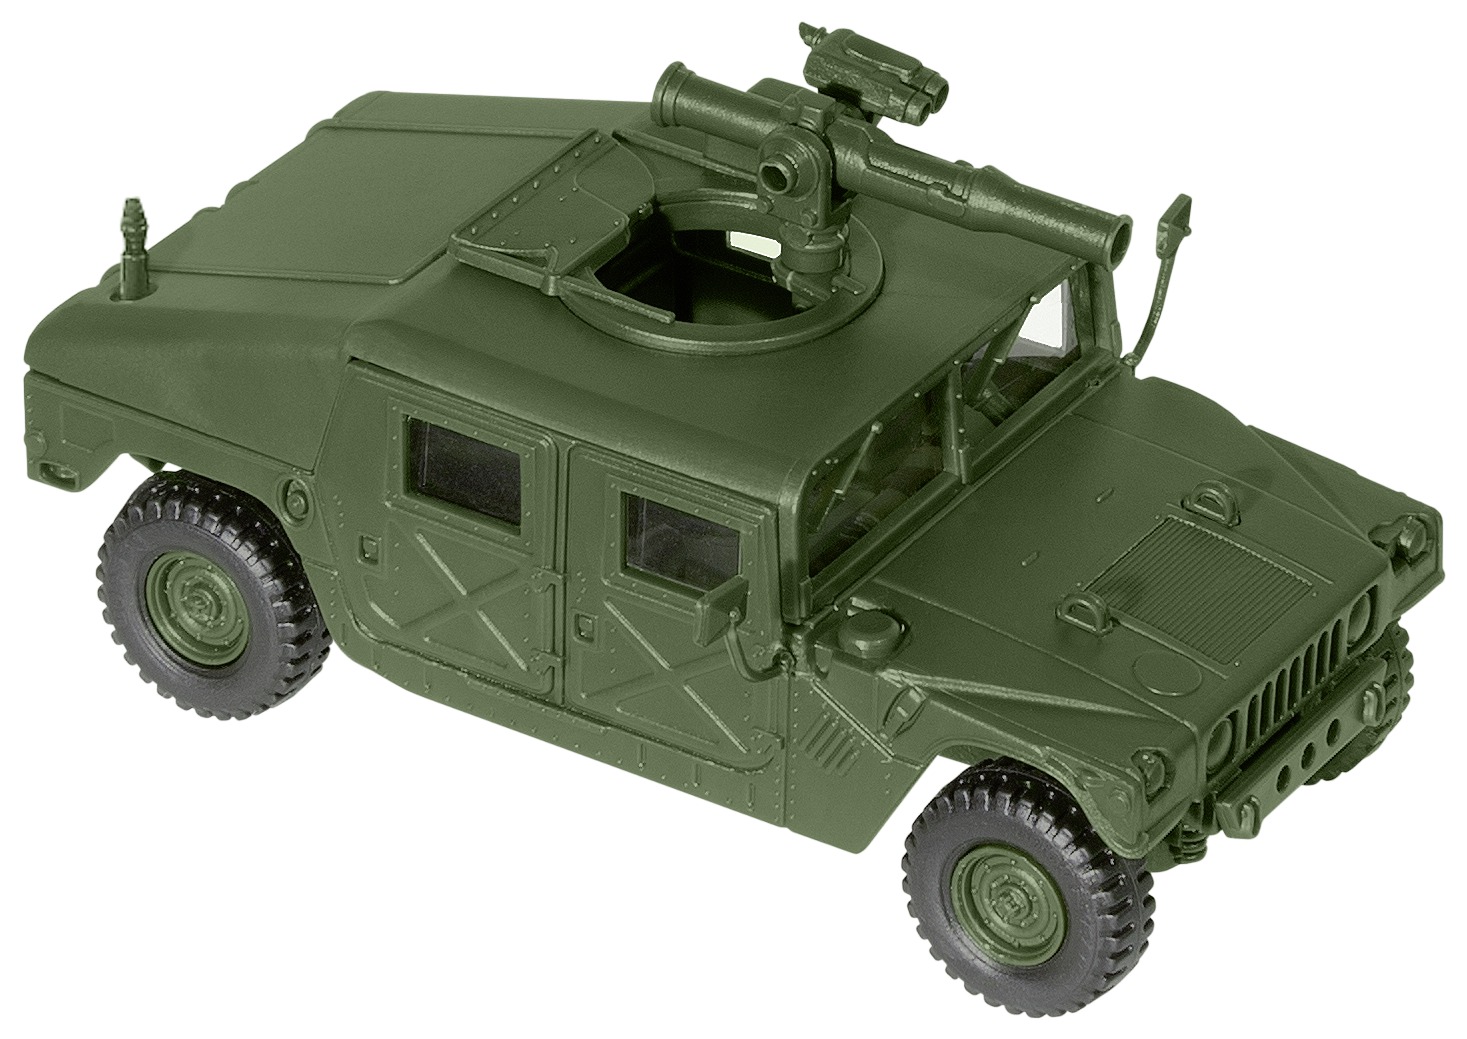 ROCO MINITANK 5043 M 996 "Hummer" US-Militär Bausatz 1:87 - NEU